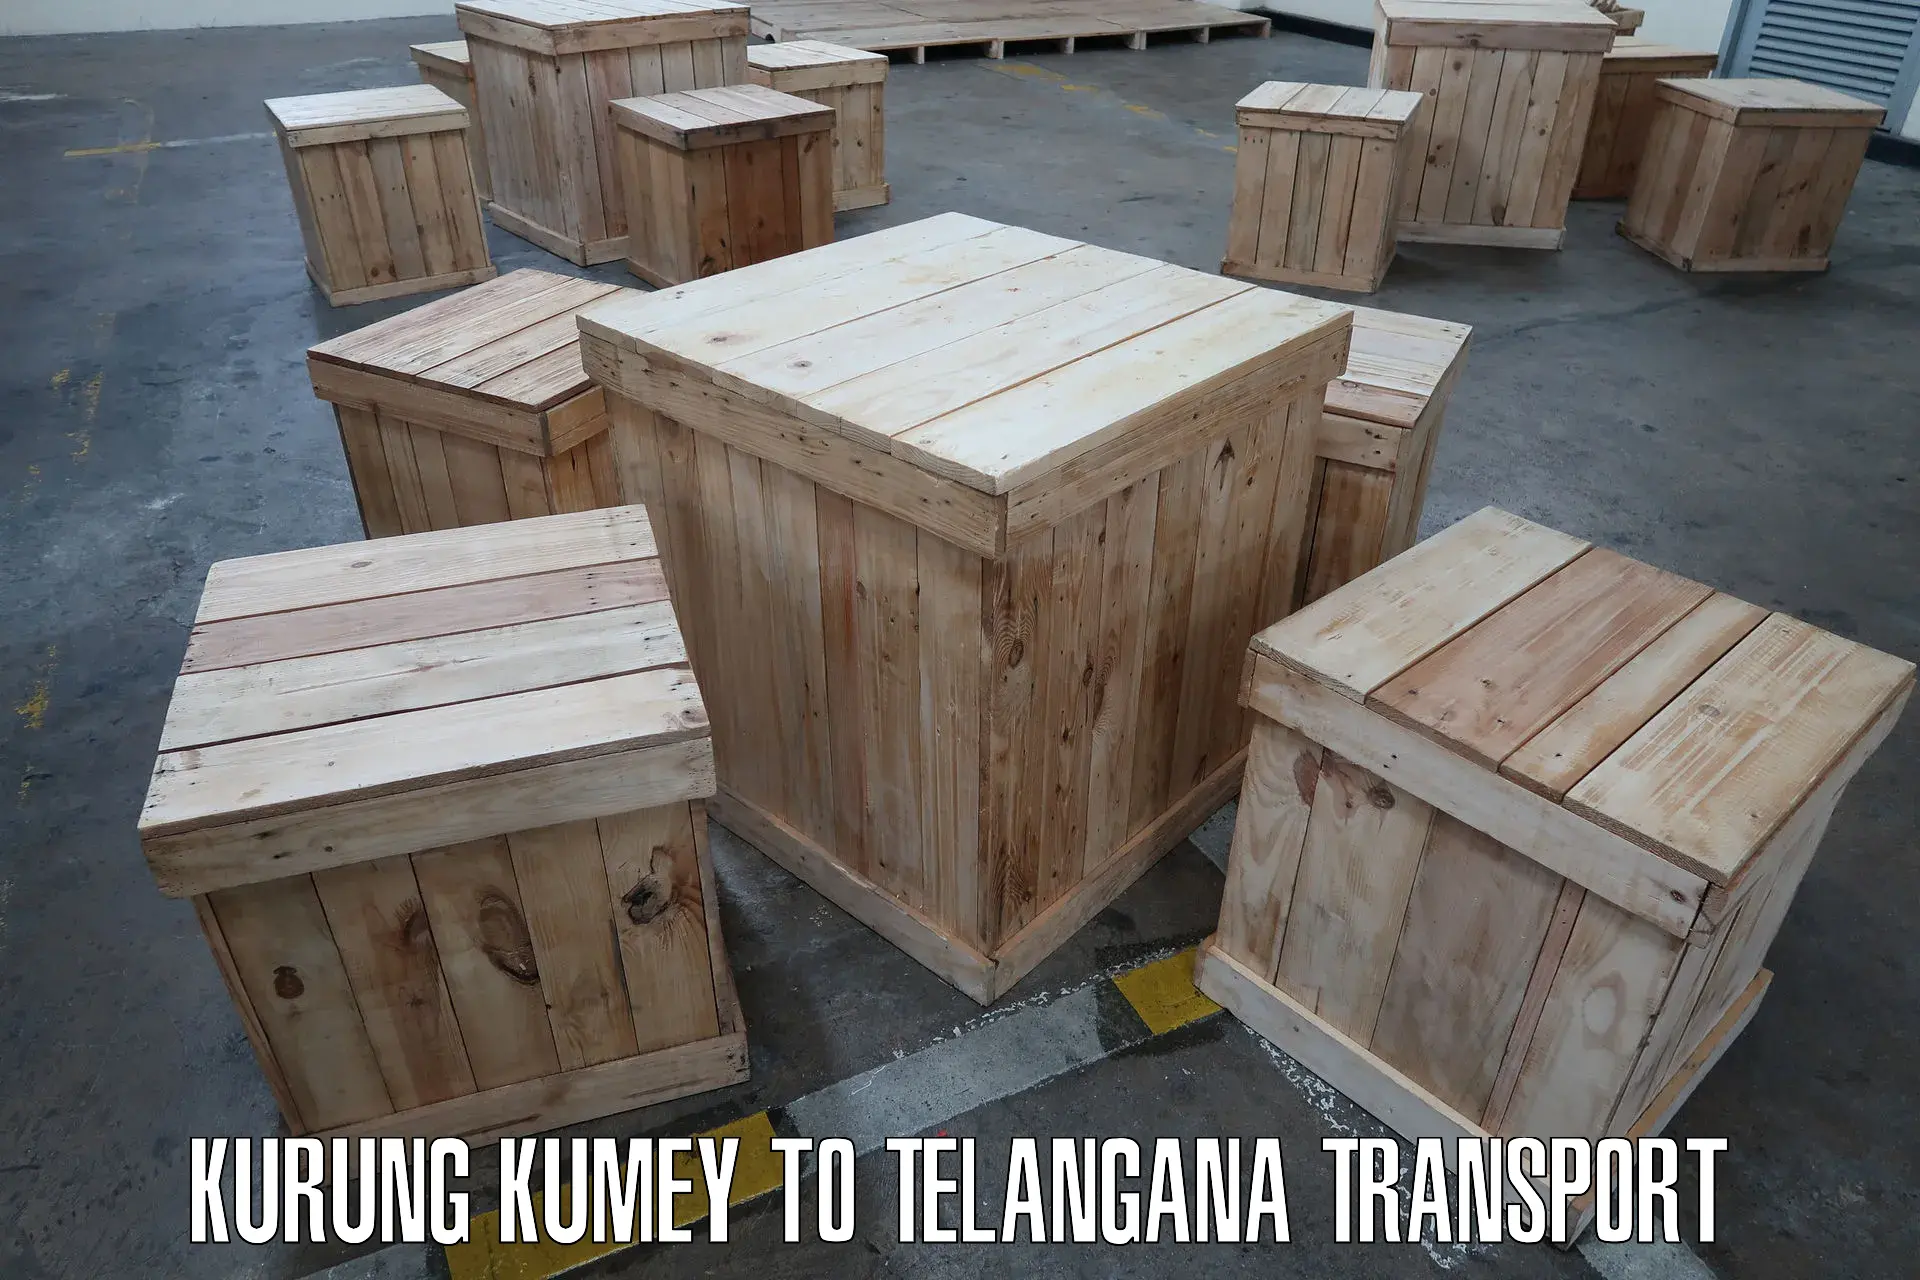 Delivery service Kurung Kumey to Mogulla Pally